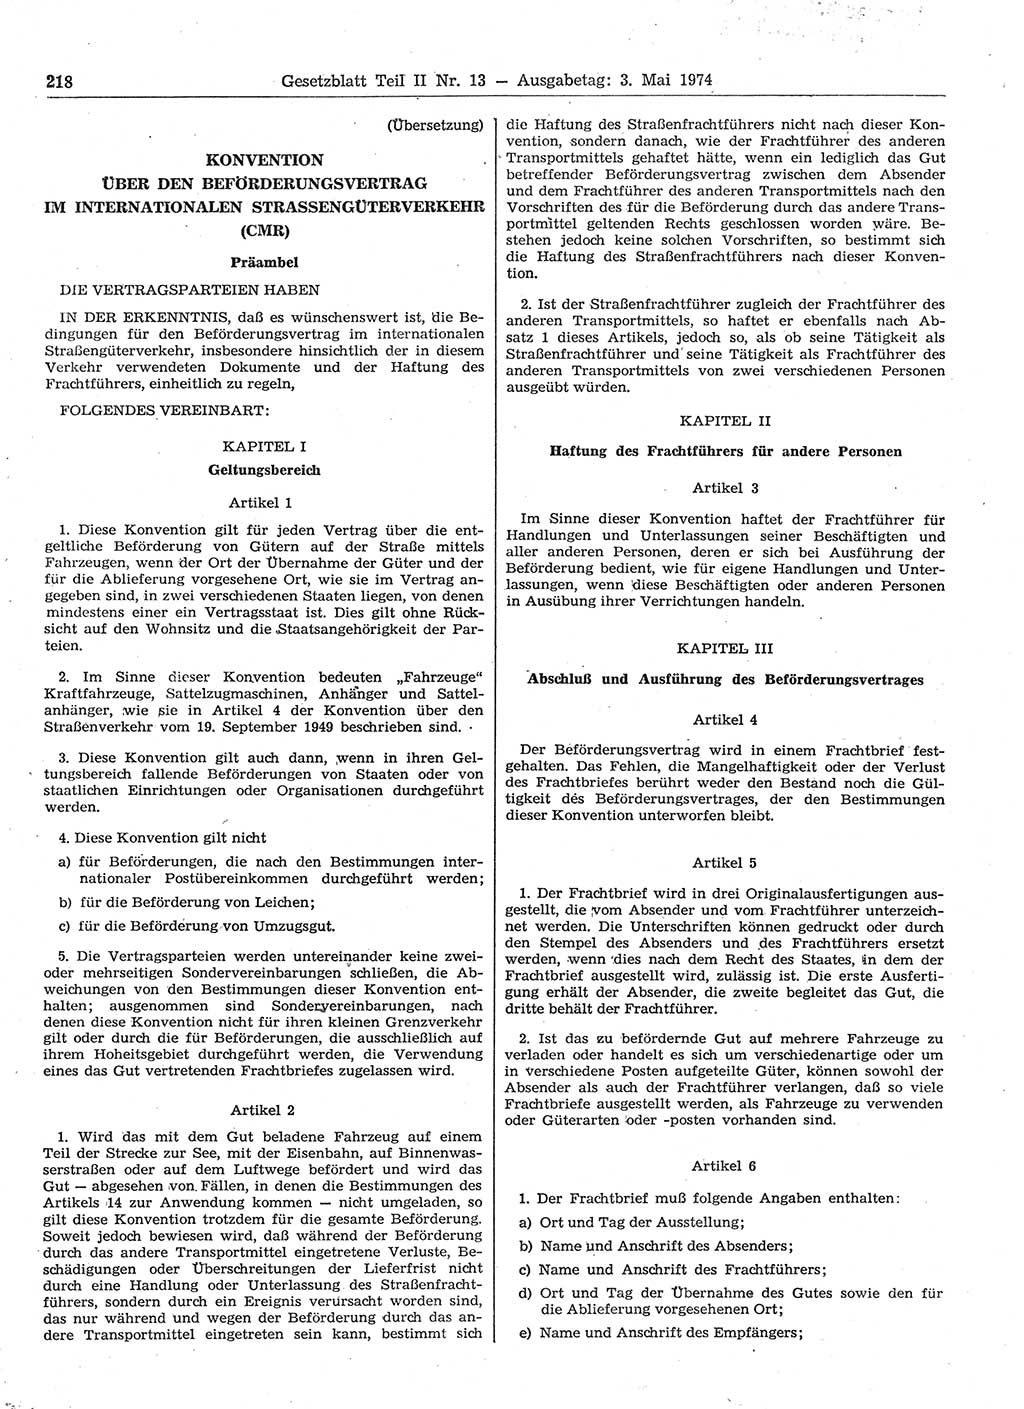 Gesetzblatt (GBl.) der Deutschen Demokratischen Republik (DDR) Teil ⅠⅠ 1974, Seite 218 (GBl. DDR ⅠⅠ 1974, S. 218)